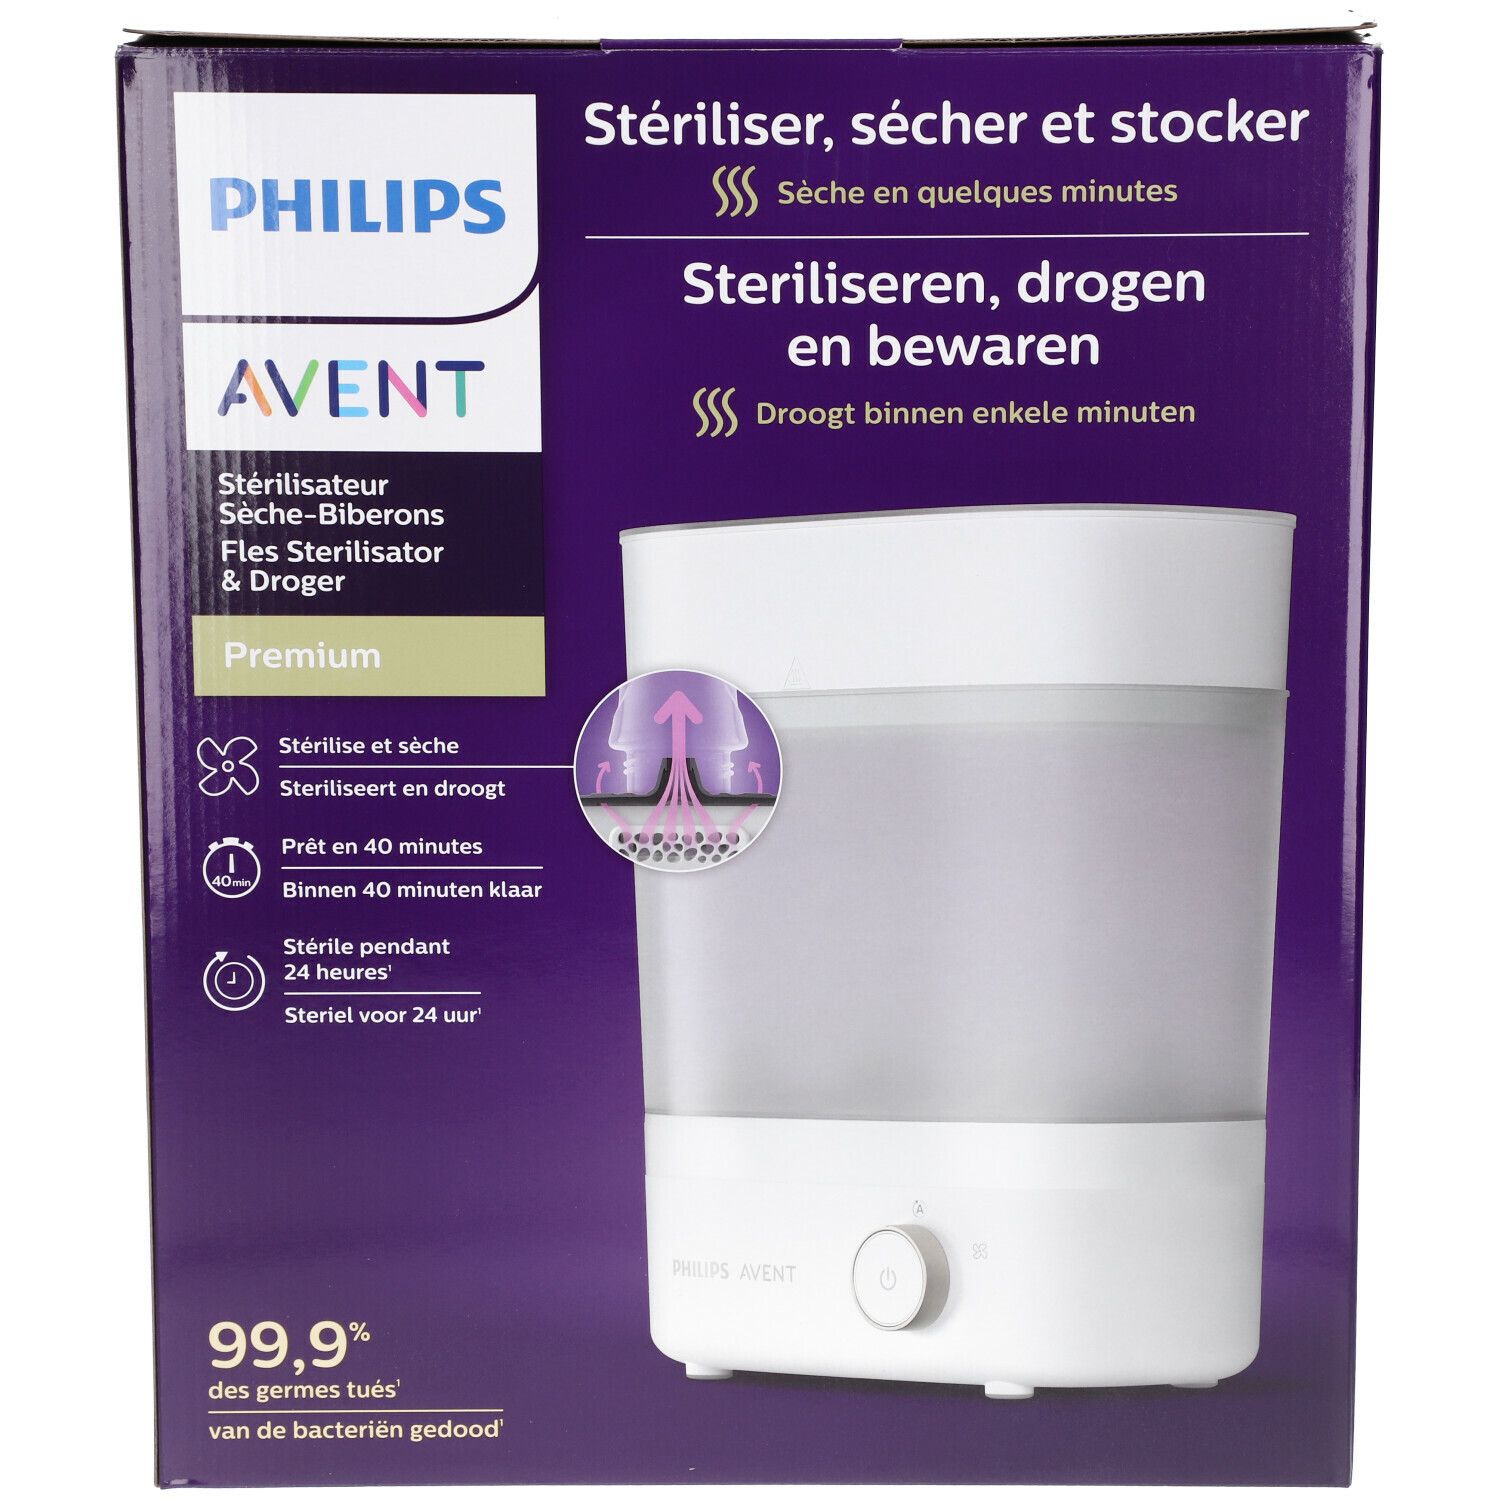 Philips Avent Stérilisateur Scf293/00